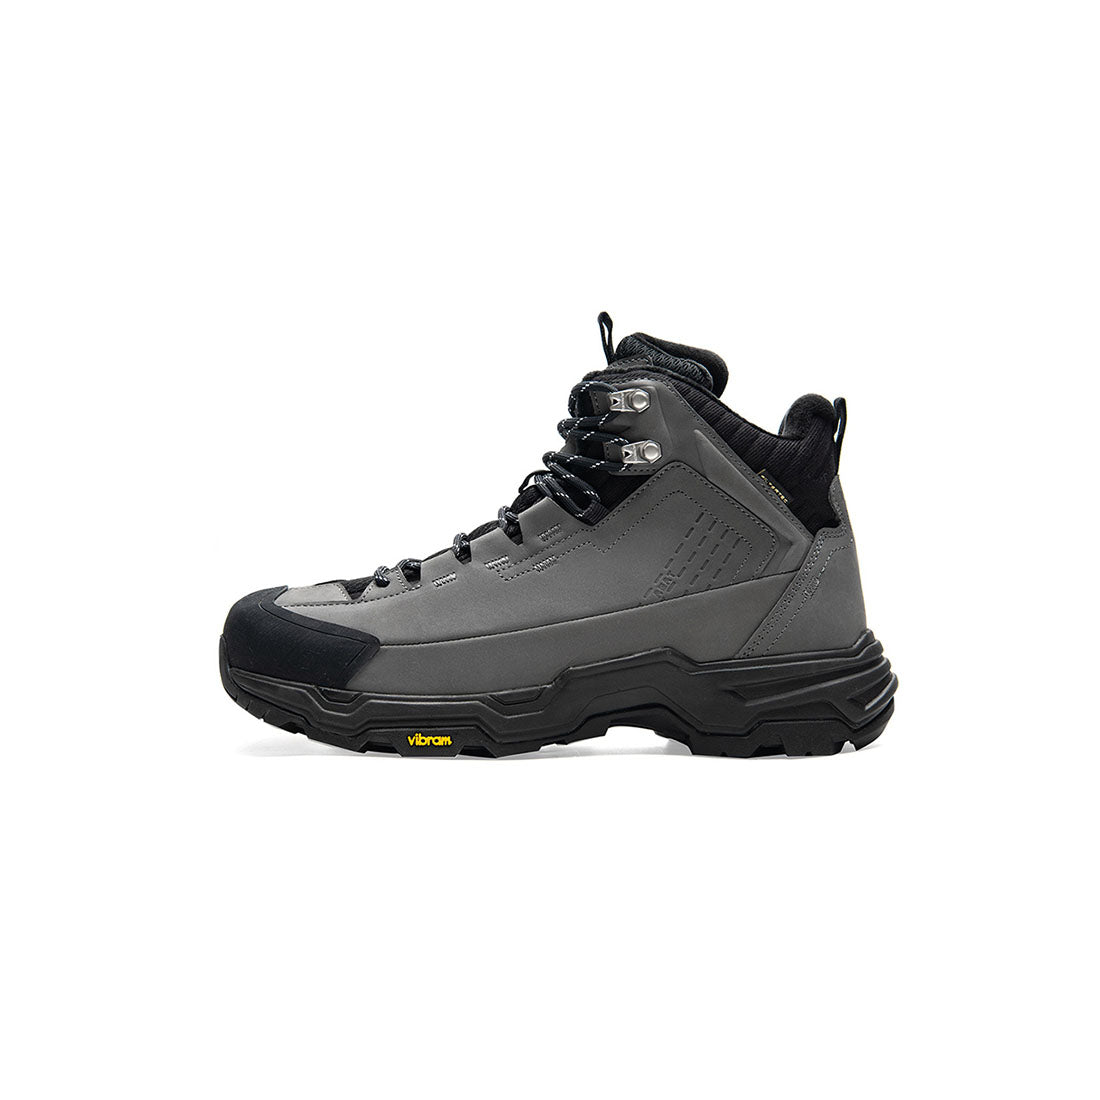 Kailas N53° FLT Mid Waterproof Trekking Hiking Shoes Men's